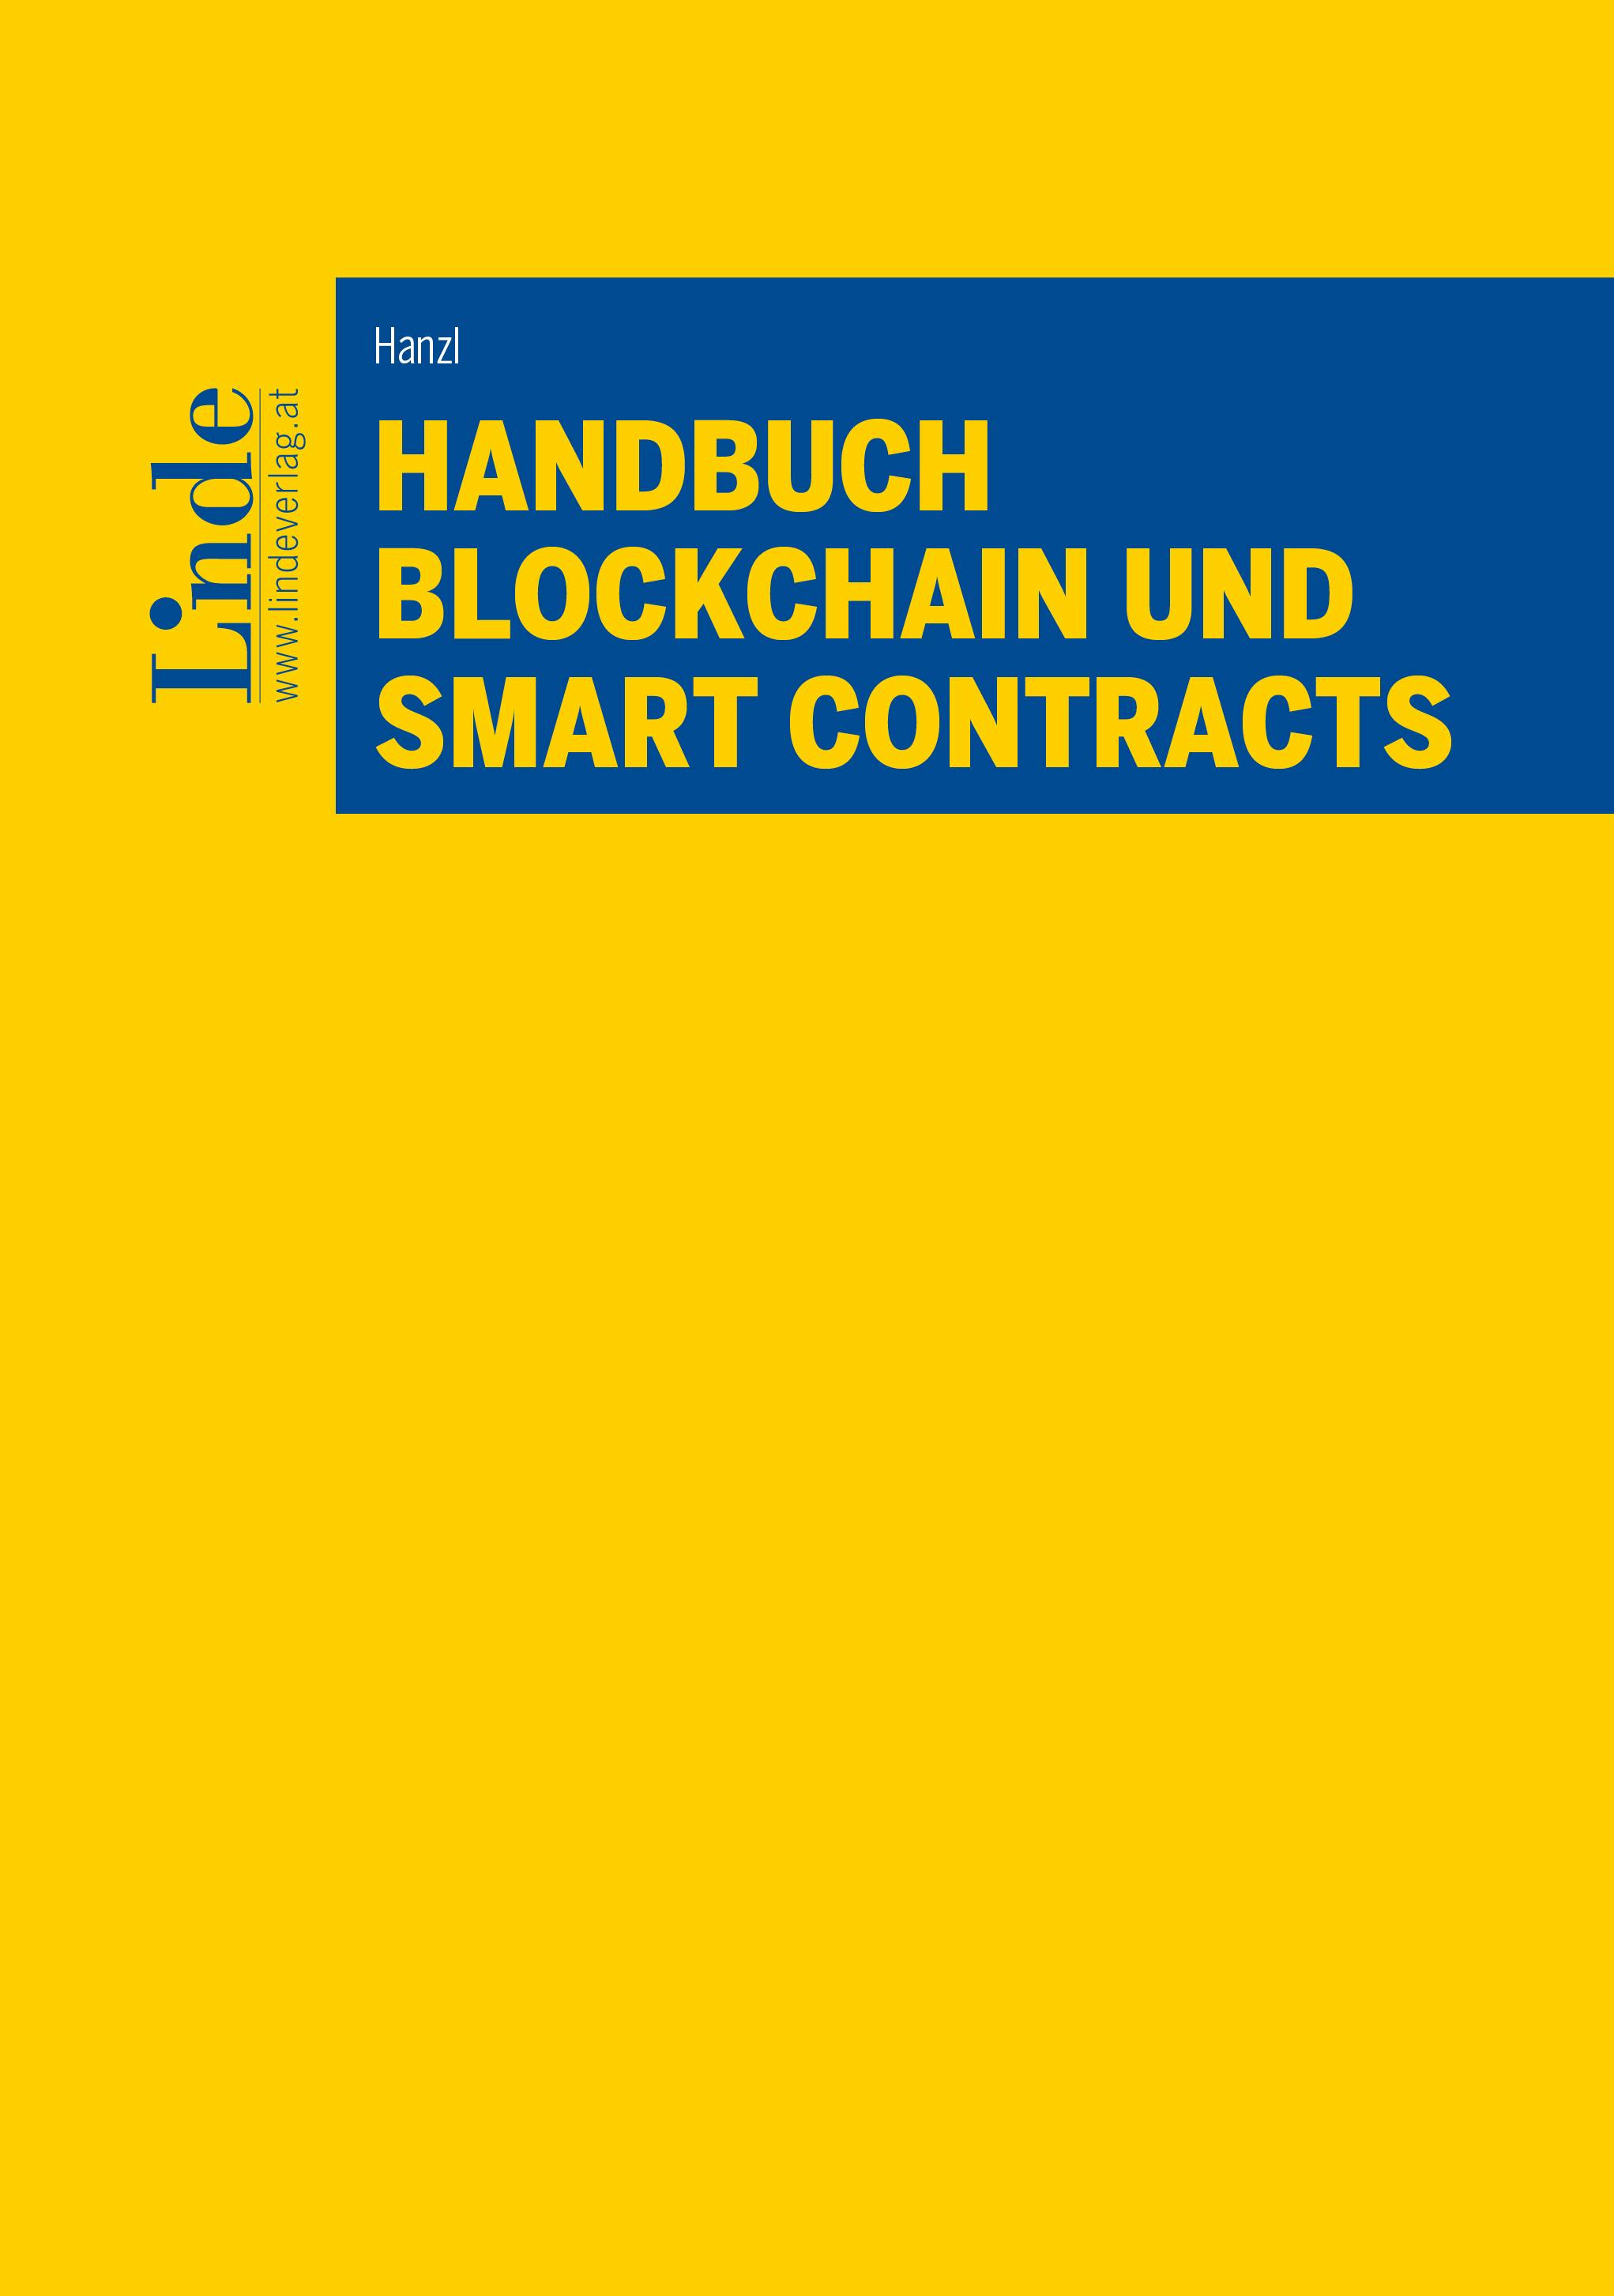 Hanzl
Handbuch Blockchain und Smart Contracts